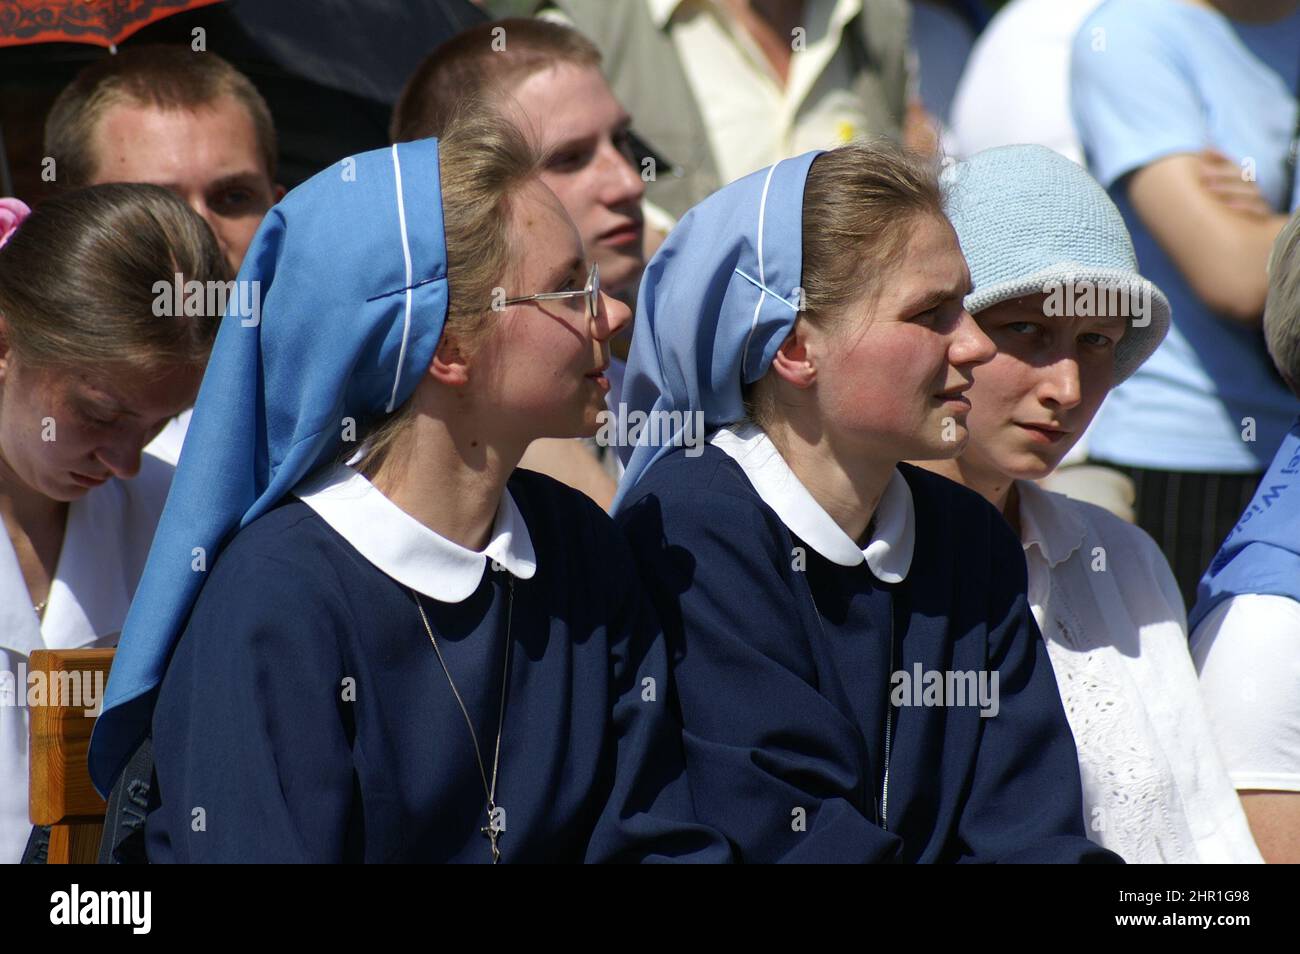 Wieleń Zaobrzański, Großpolen Polen, Polska; zwei junge Nonnen im öffentlichen Dienst. Zwei junge Neunte bei einem öffentlichen Gottesdienst Stockfoto